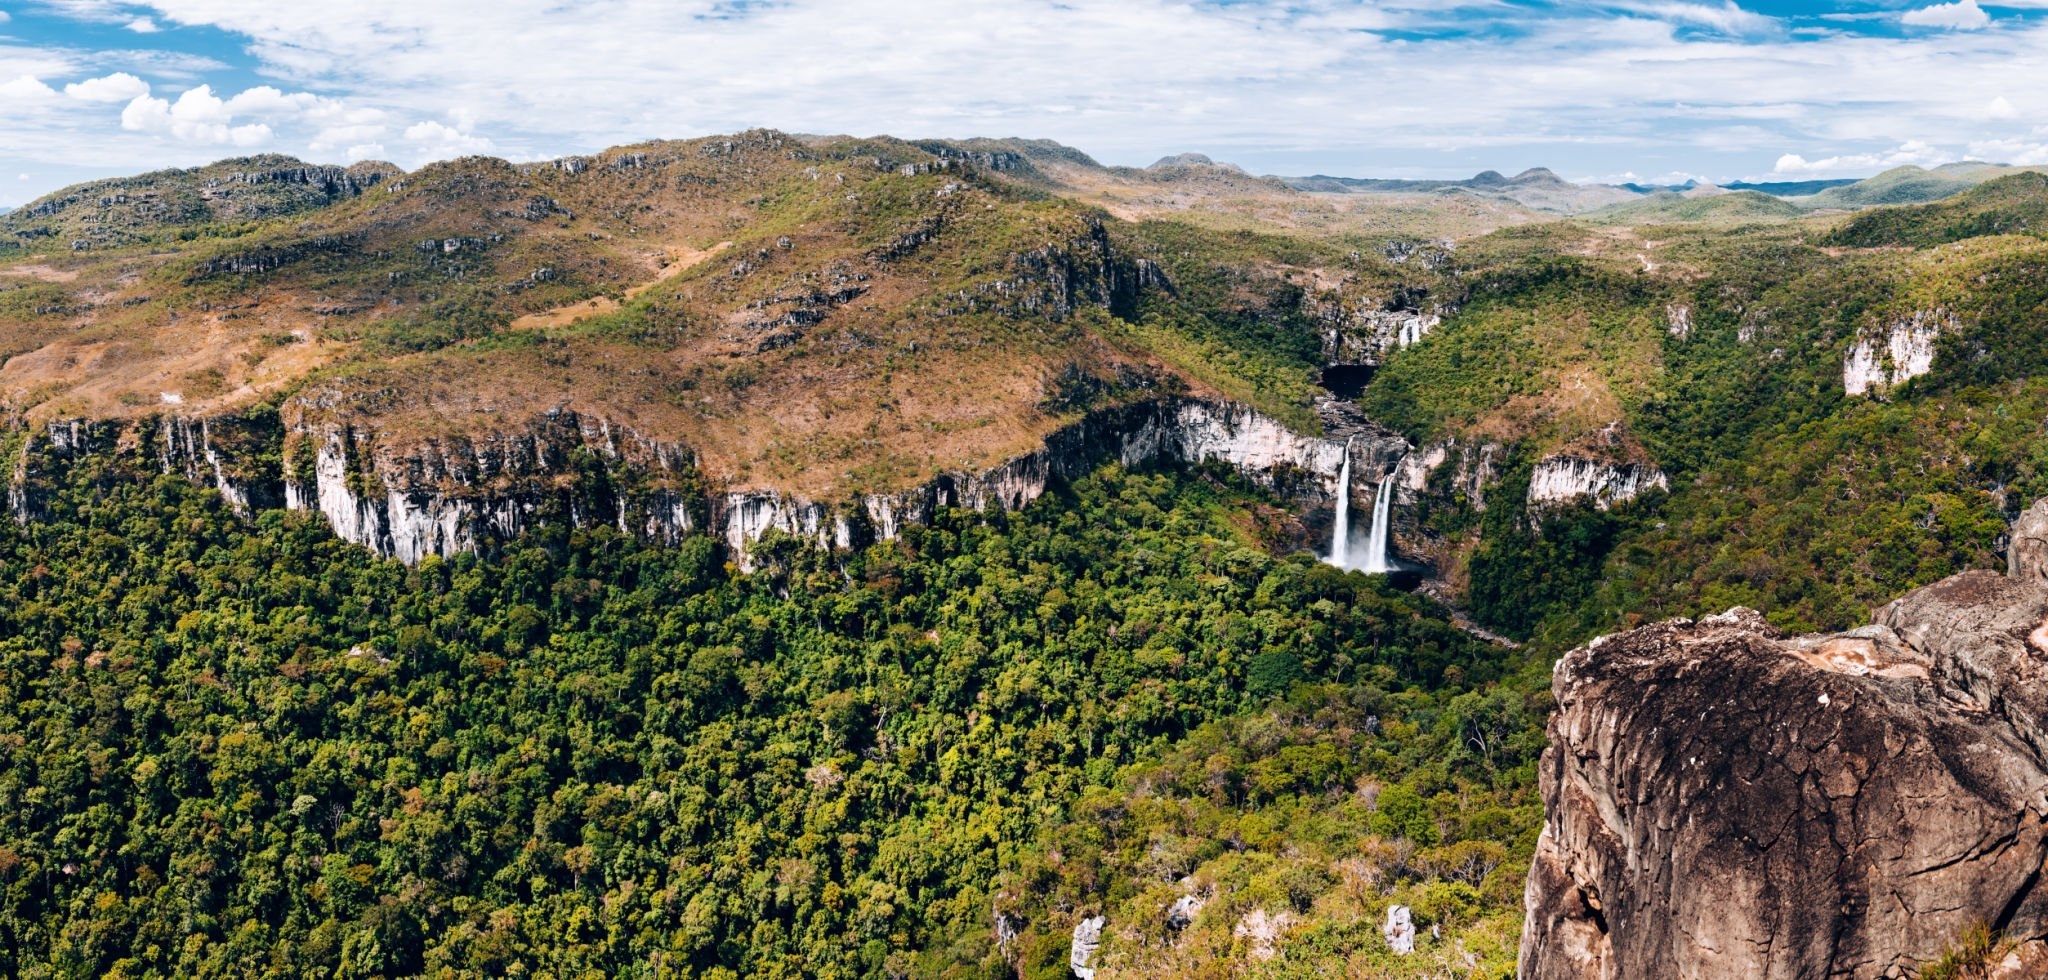 Ecoturismo em Goiás: conheça destinos sustentáveis no Estado para visitar